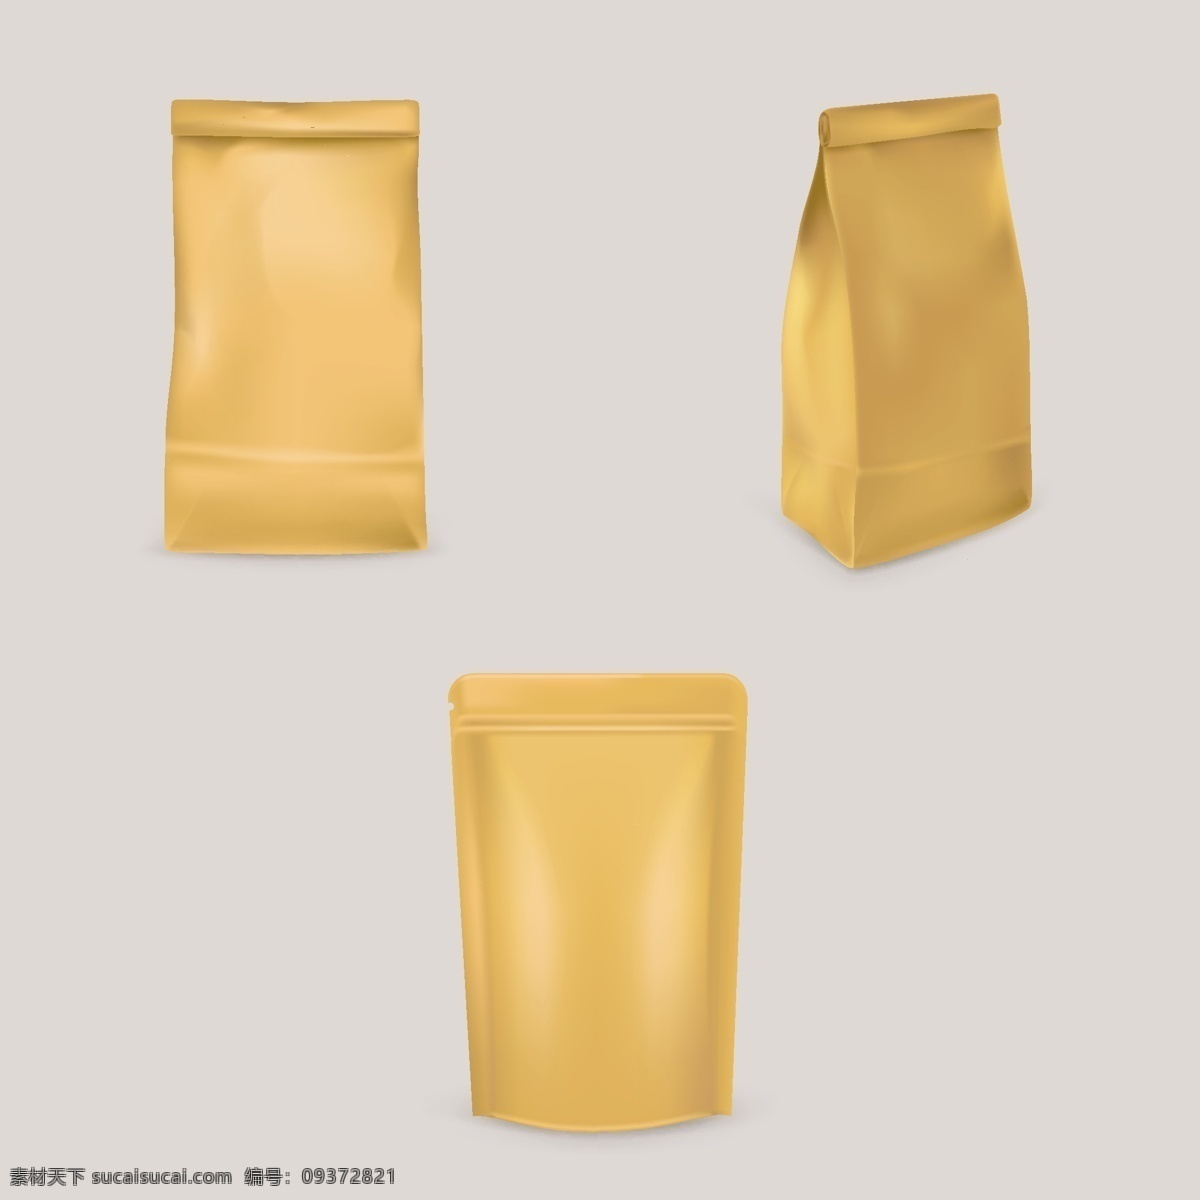 牛皮带 塑封袋 封口袋 产品设计 包装设计 包装袋 袋装设计 空白包装 产品包装效果 包装效果图 产品包装瓶